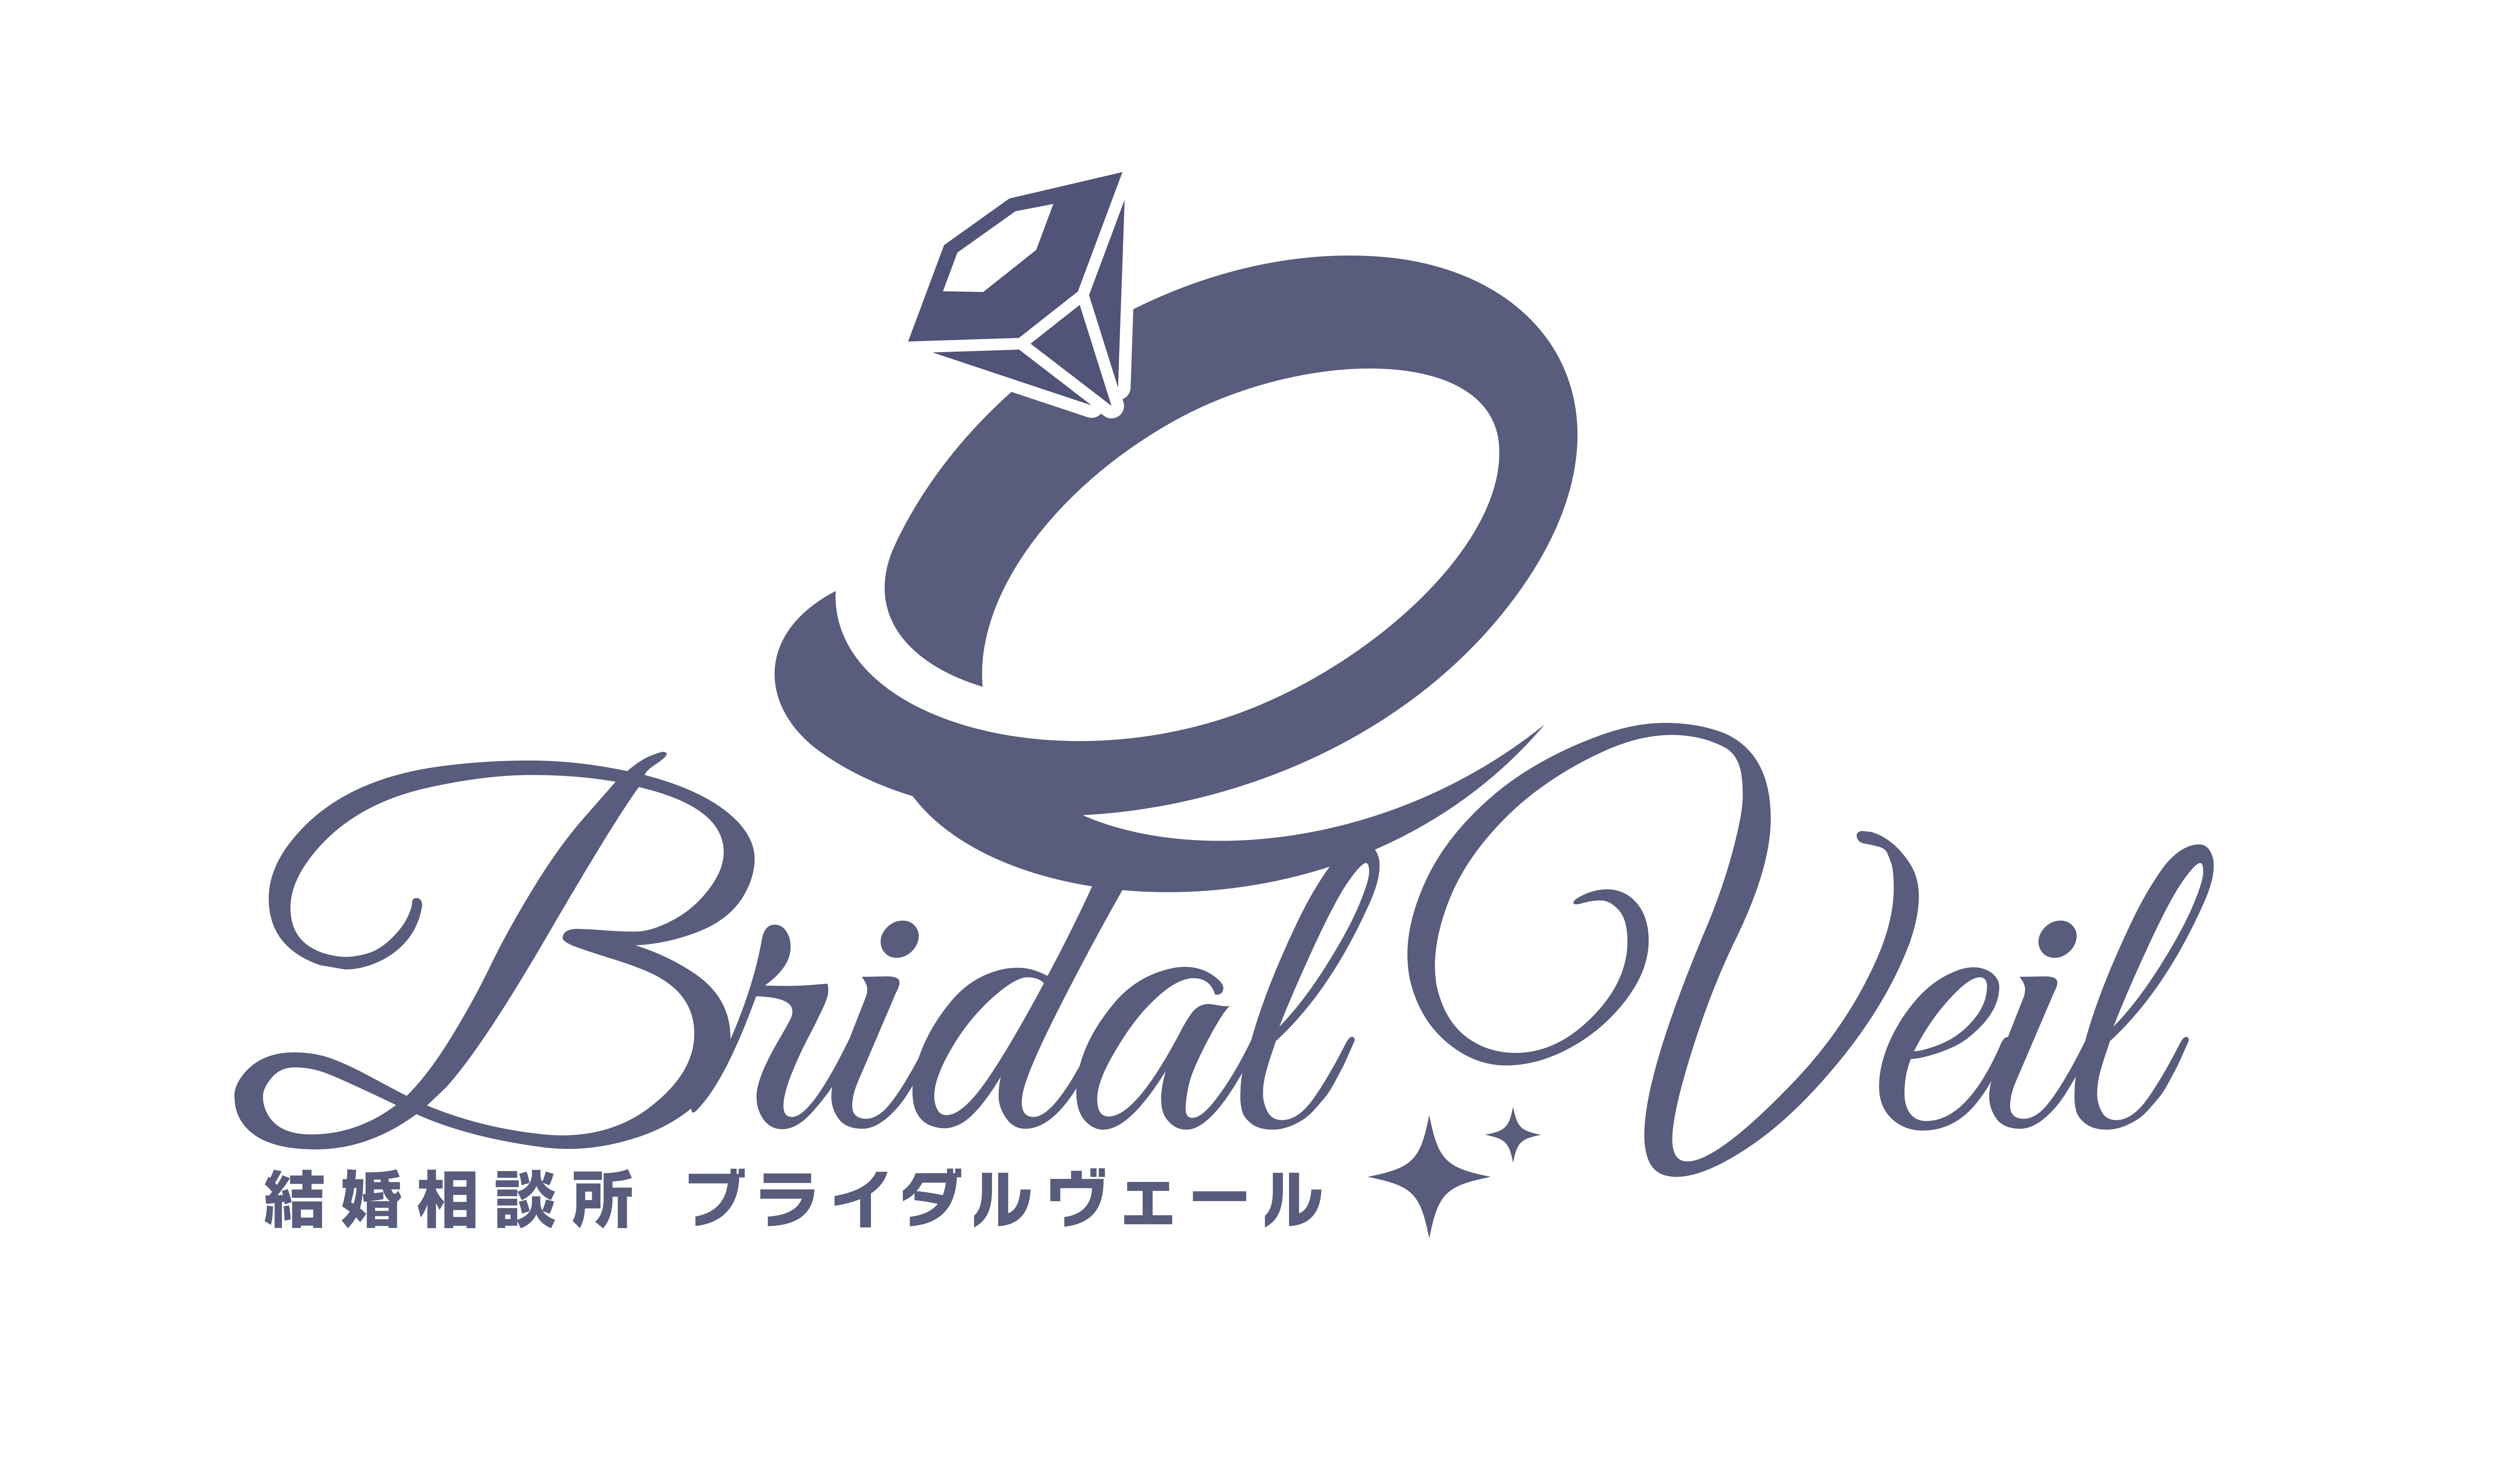 Bridai veil（ブライダルヴェール）